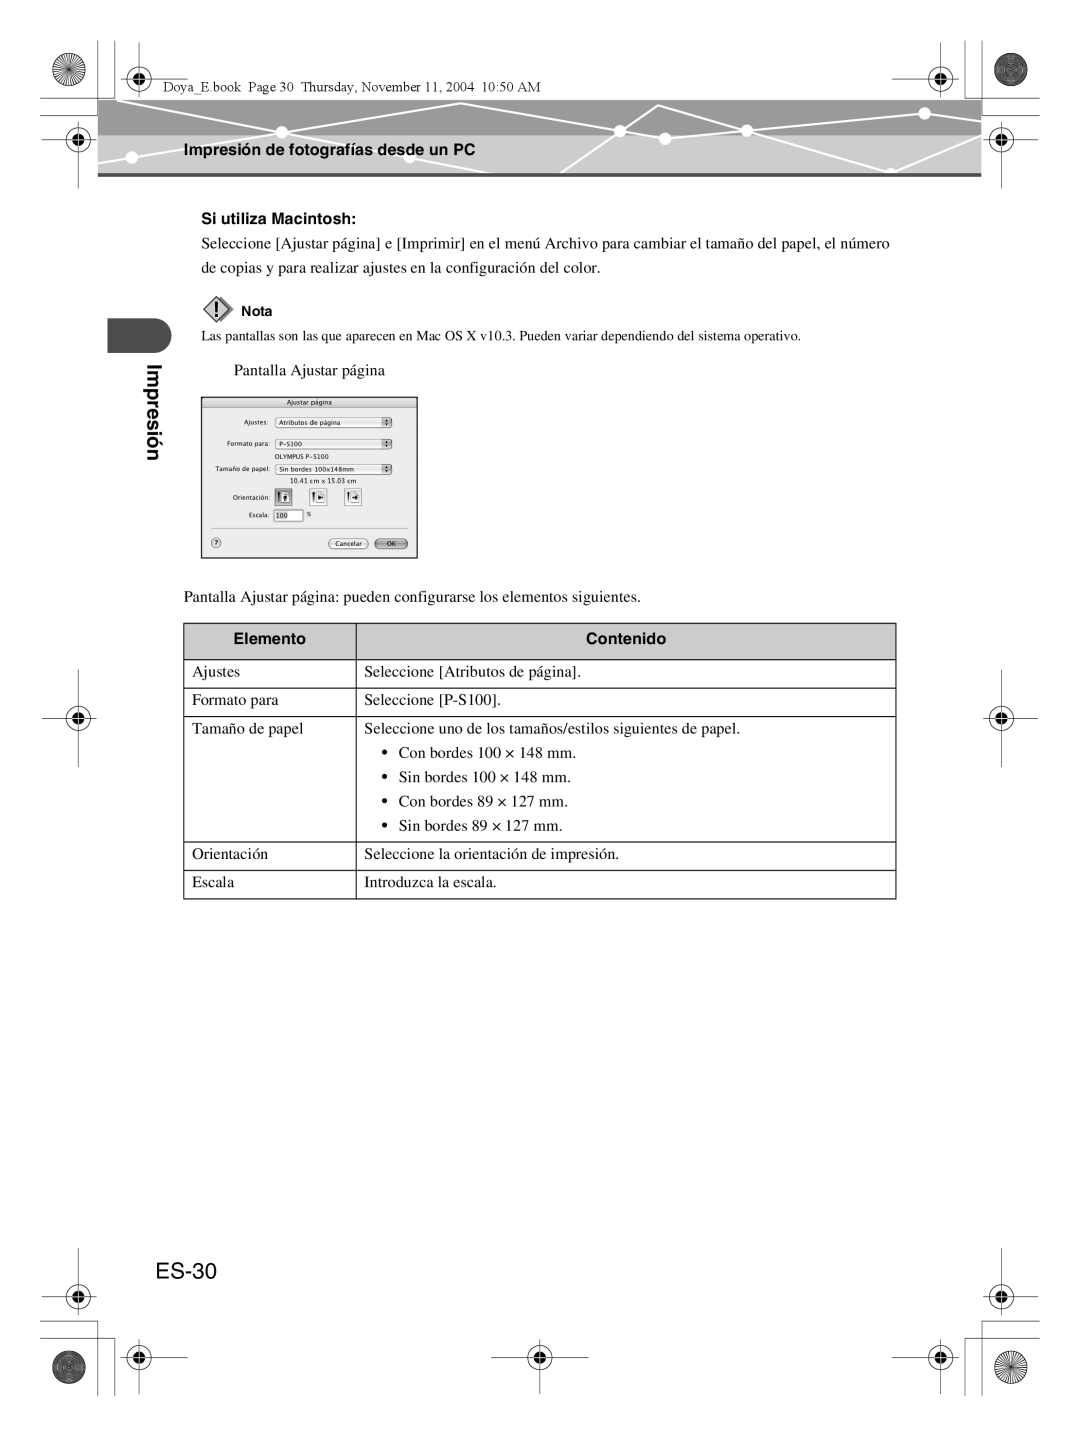 Olympus P-S100 user manual ES-30, Impresión de fotografías desde un PC, Si utiliza Macintosh, Elemento, Contenido 